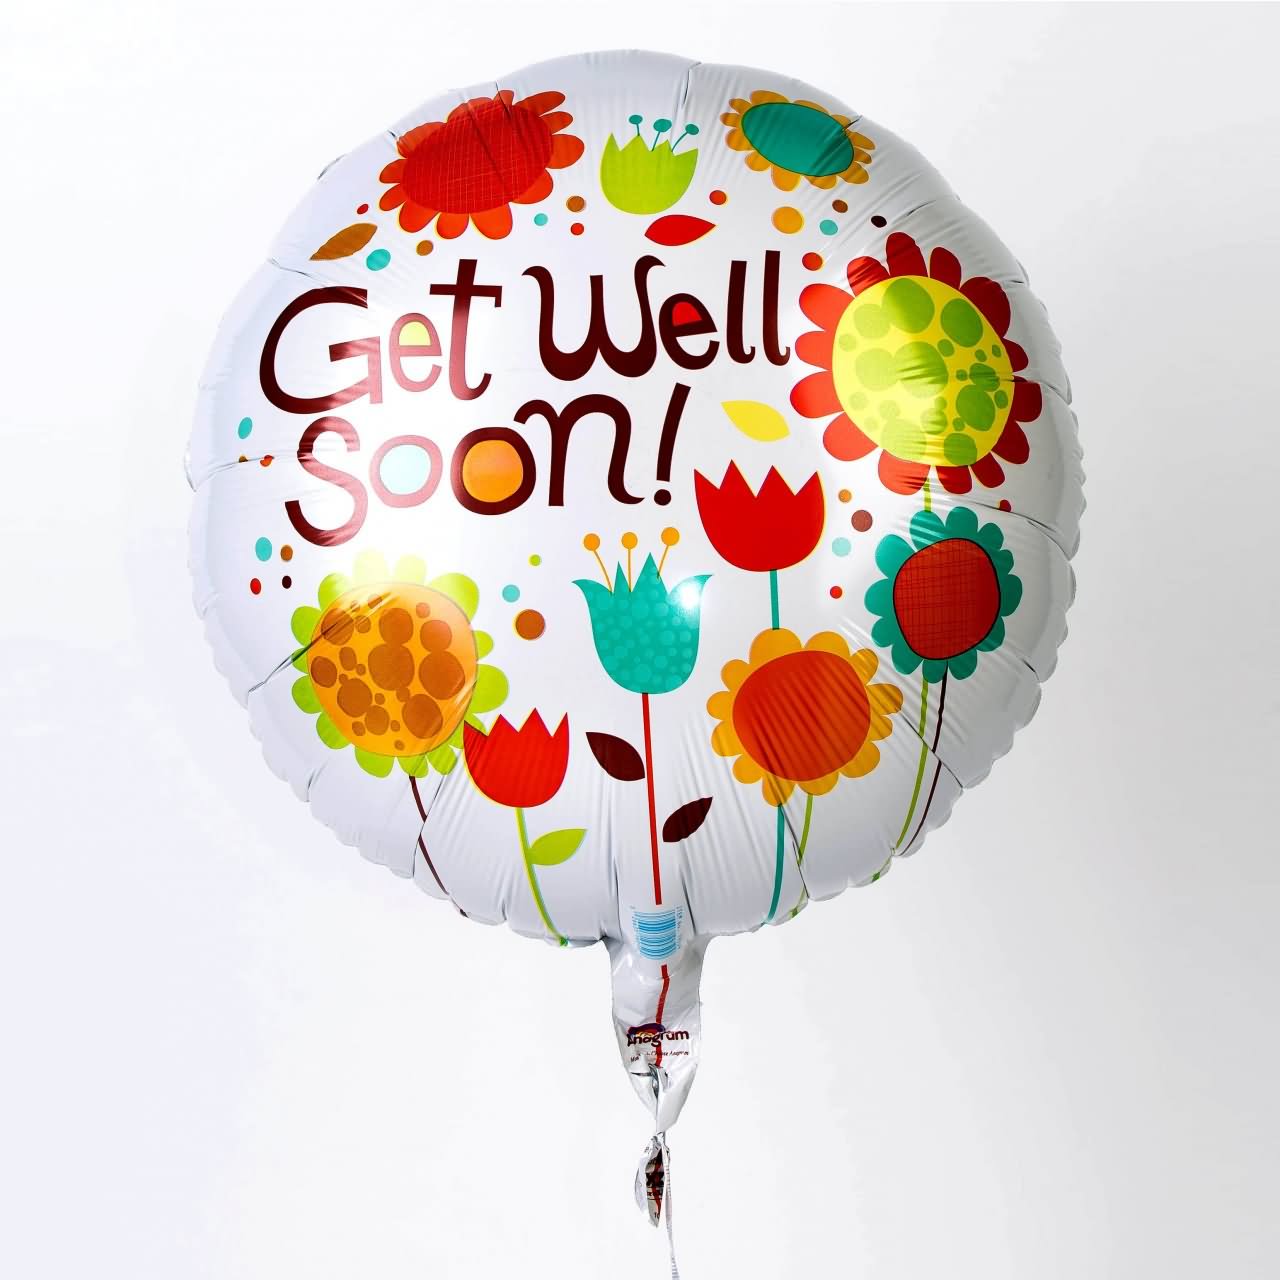 Get Well Soon Balloon Image